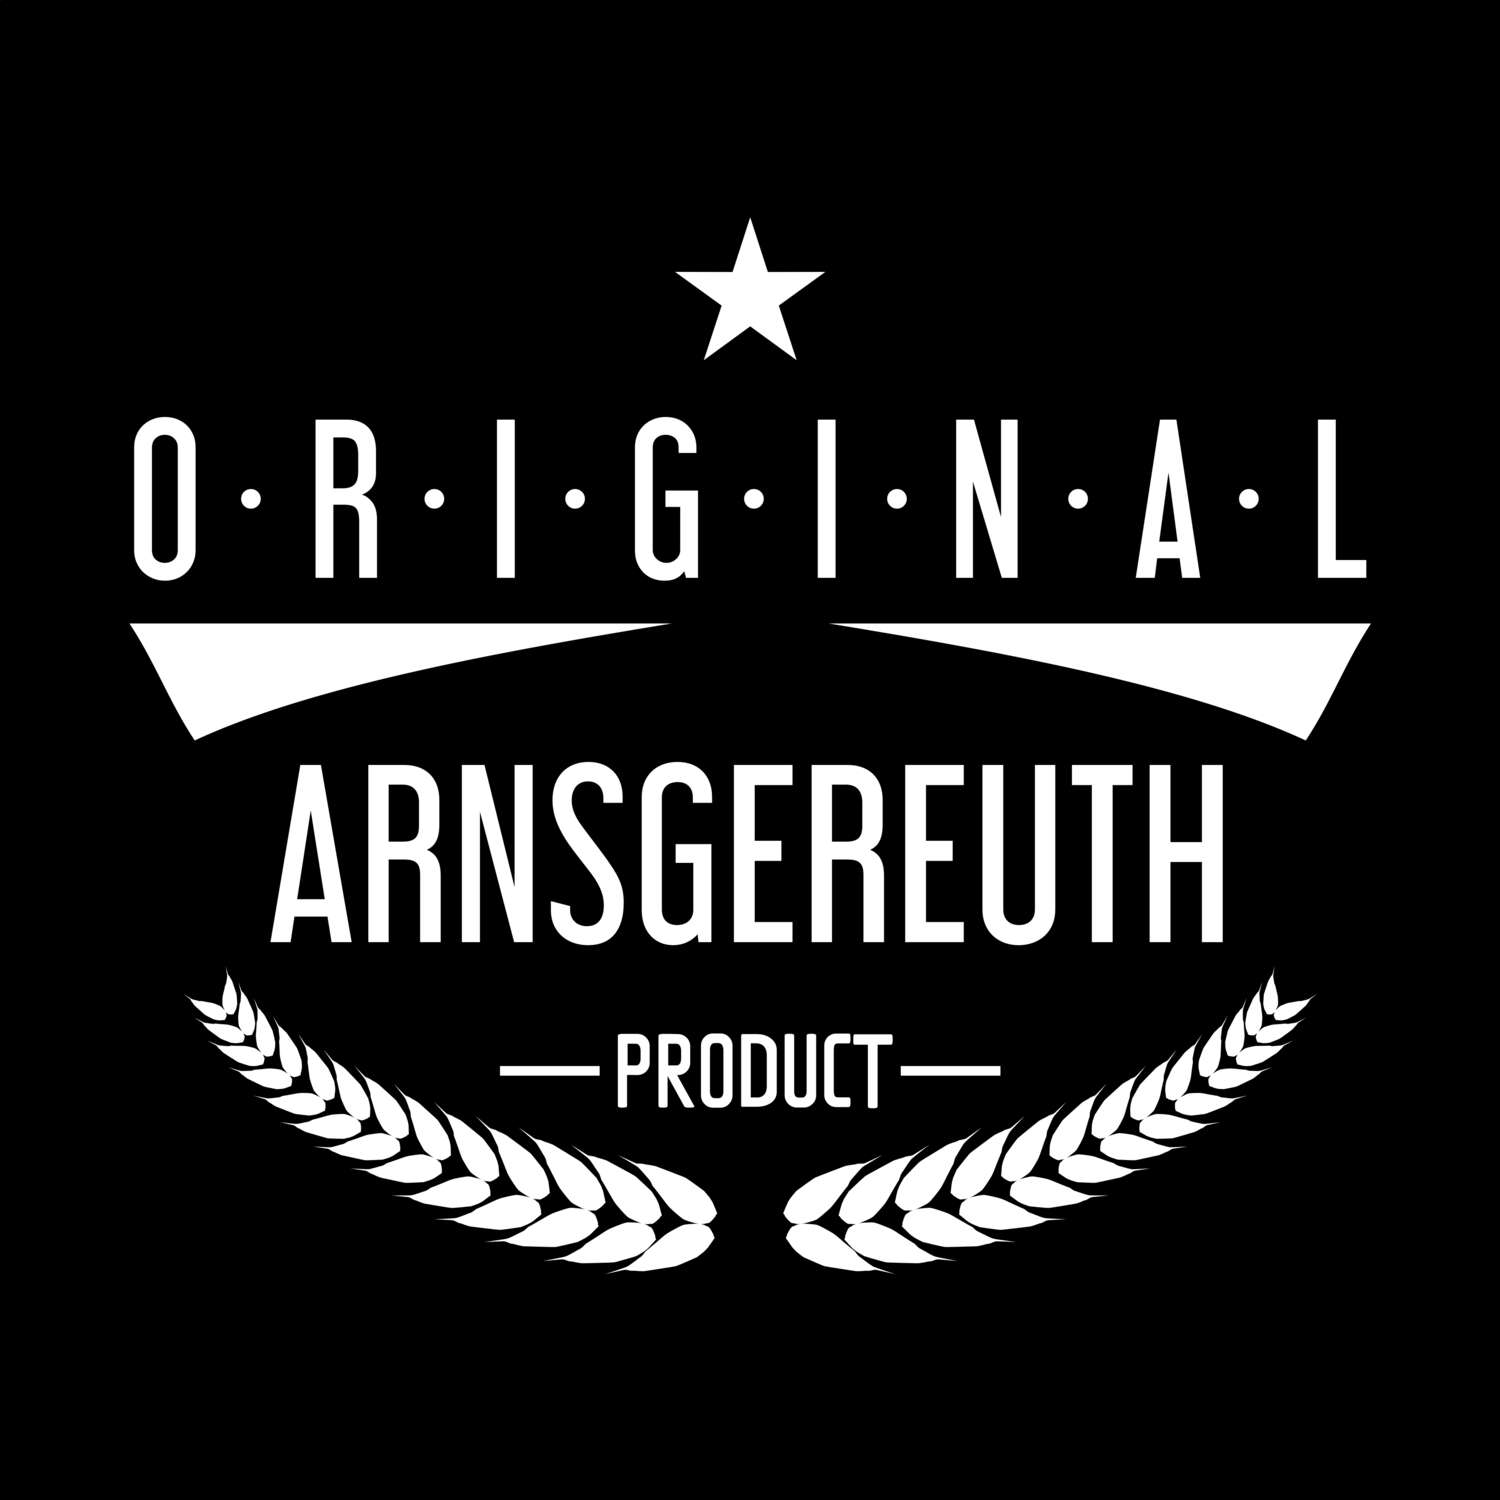 Arnsgereuth T-Shirt »Original Product«